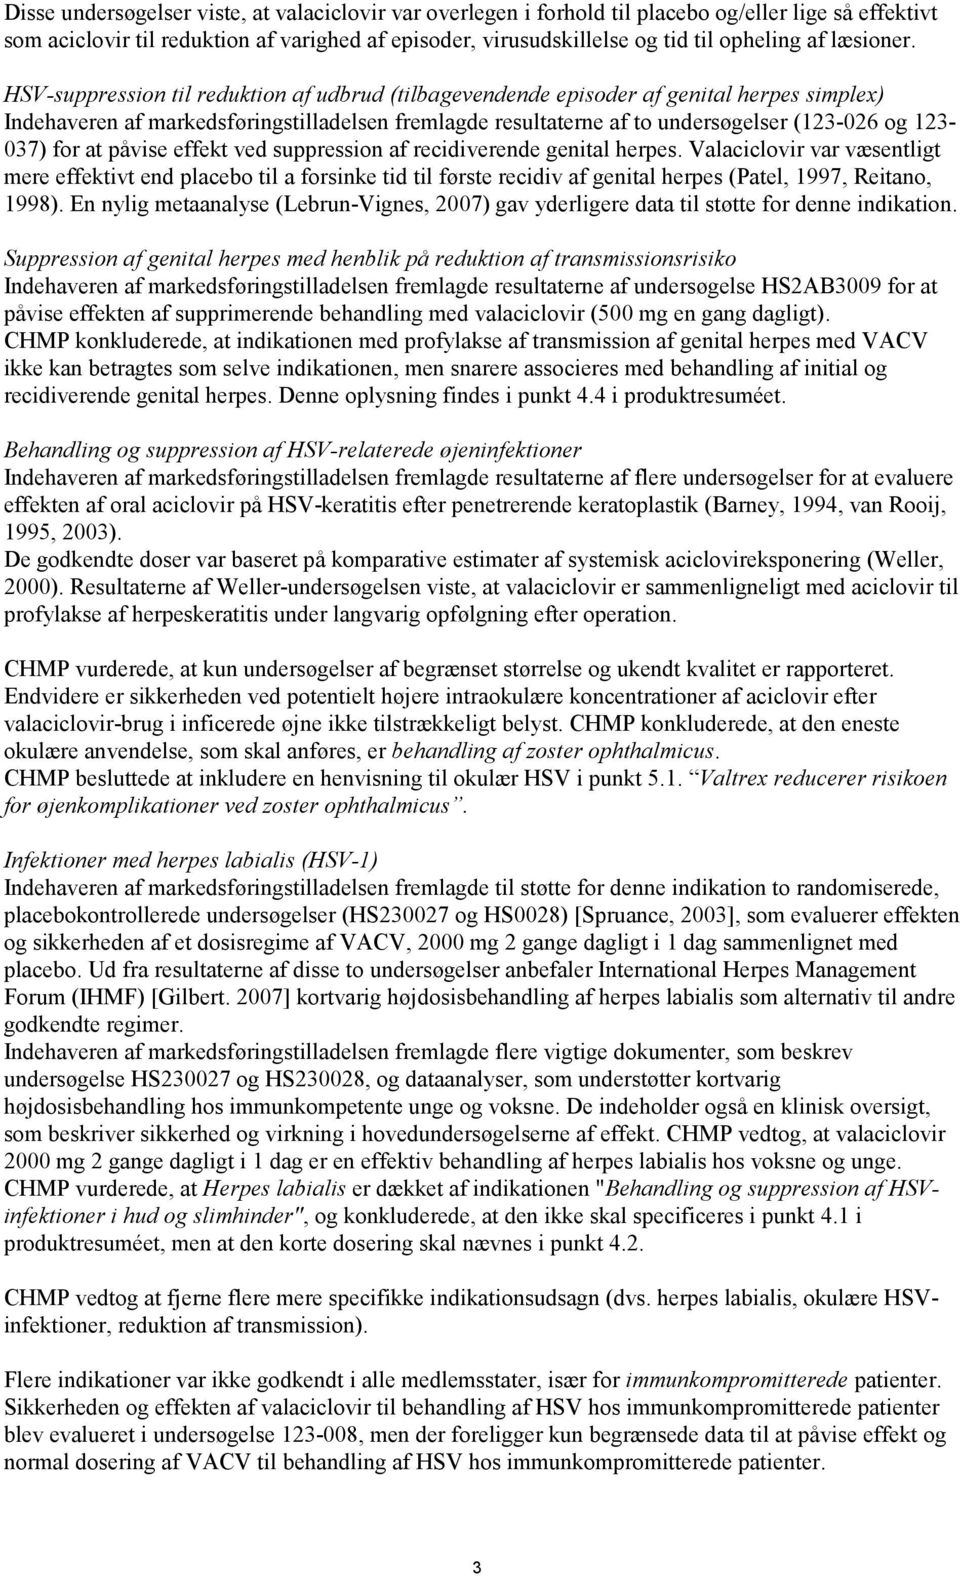 HSV-suppression til reduktion af udbrud (tilbagevendende episoder af genital herpes simplex) Indehaveren af markedsføringstilladelsen fremlagde resultaterne af to undersøgelser (123-026 og 123-037)